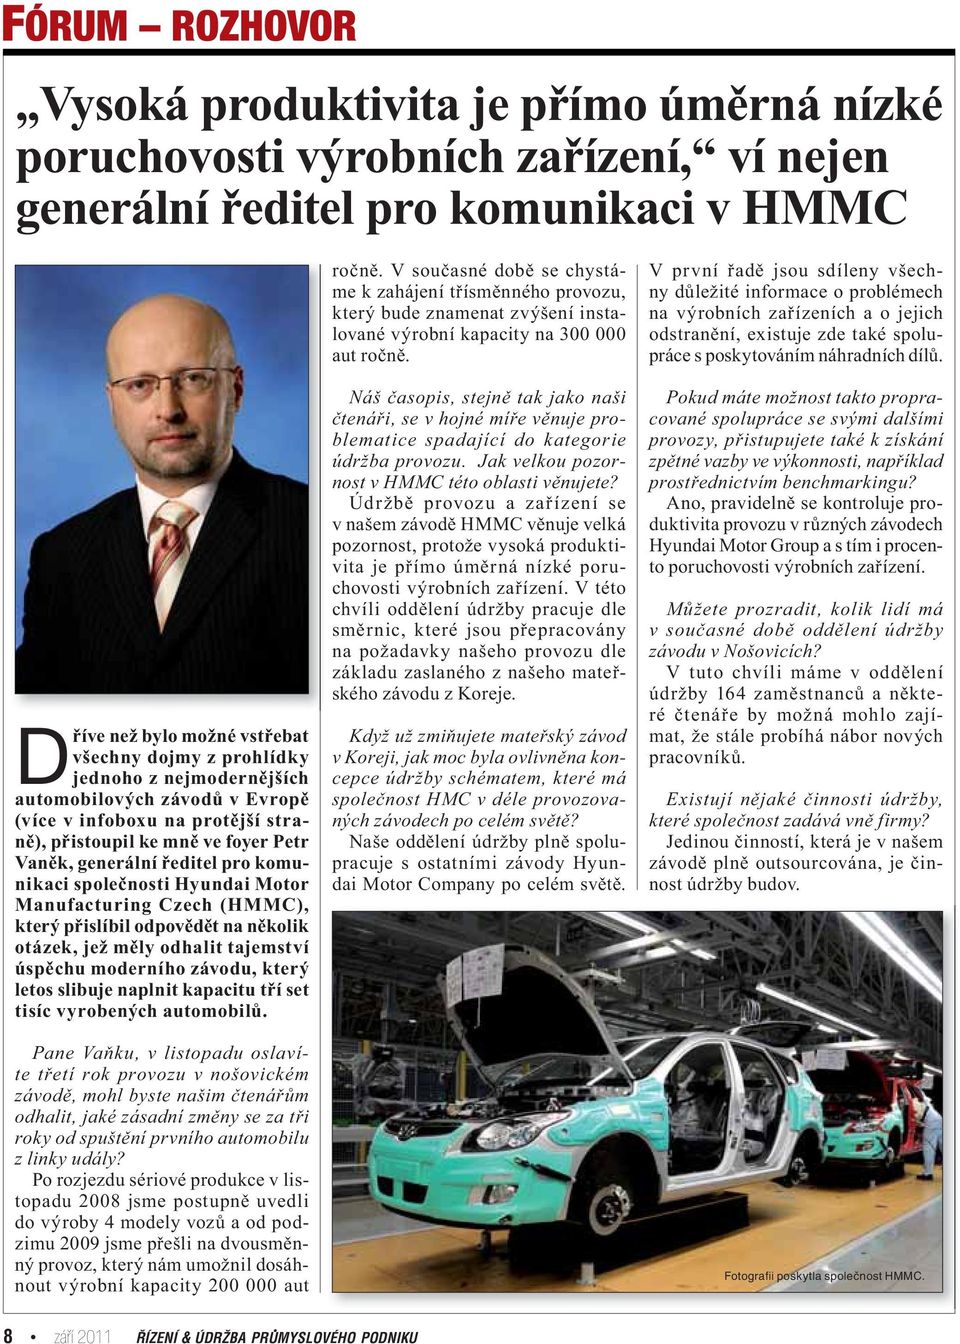 Manufacturing Czech (HMMC), který přislíbil odpovědět na několik otázek, jež měly odhalit tajemství úspěchu moderního závodu, který letos slibuje naplnit kapacitu tří set tisíc vyrobených automobilů.